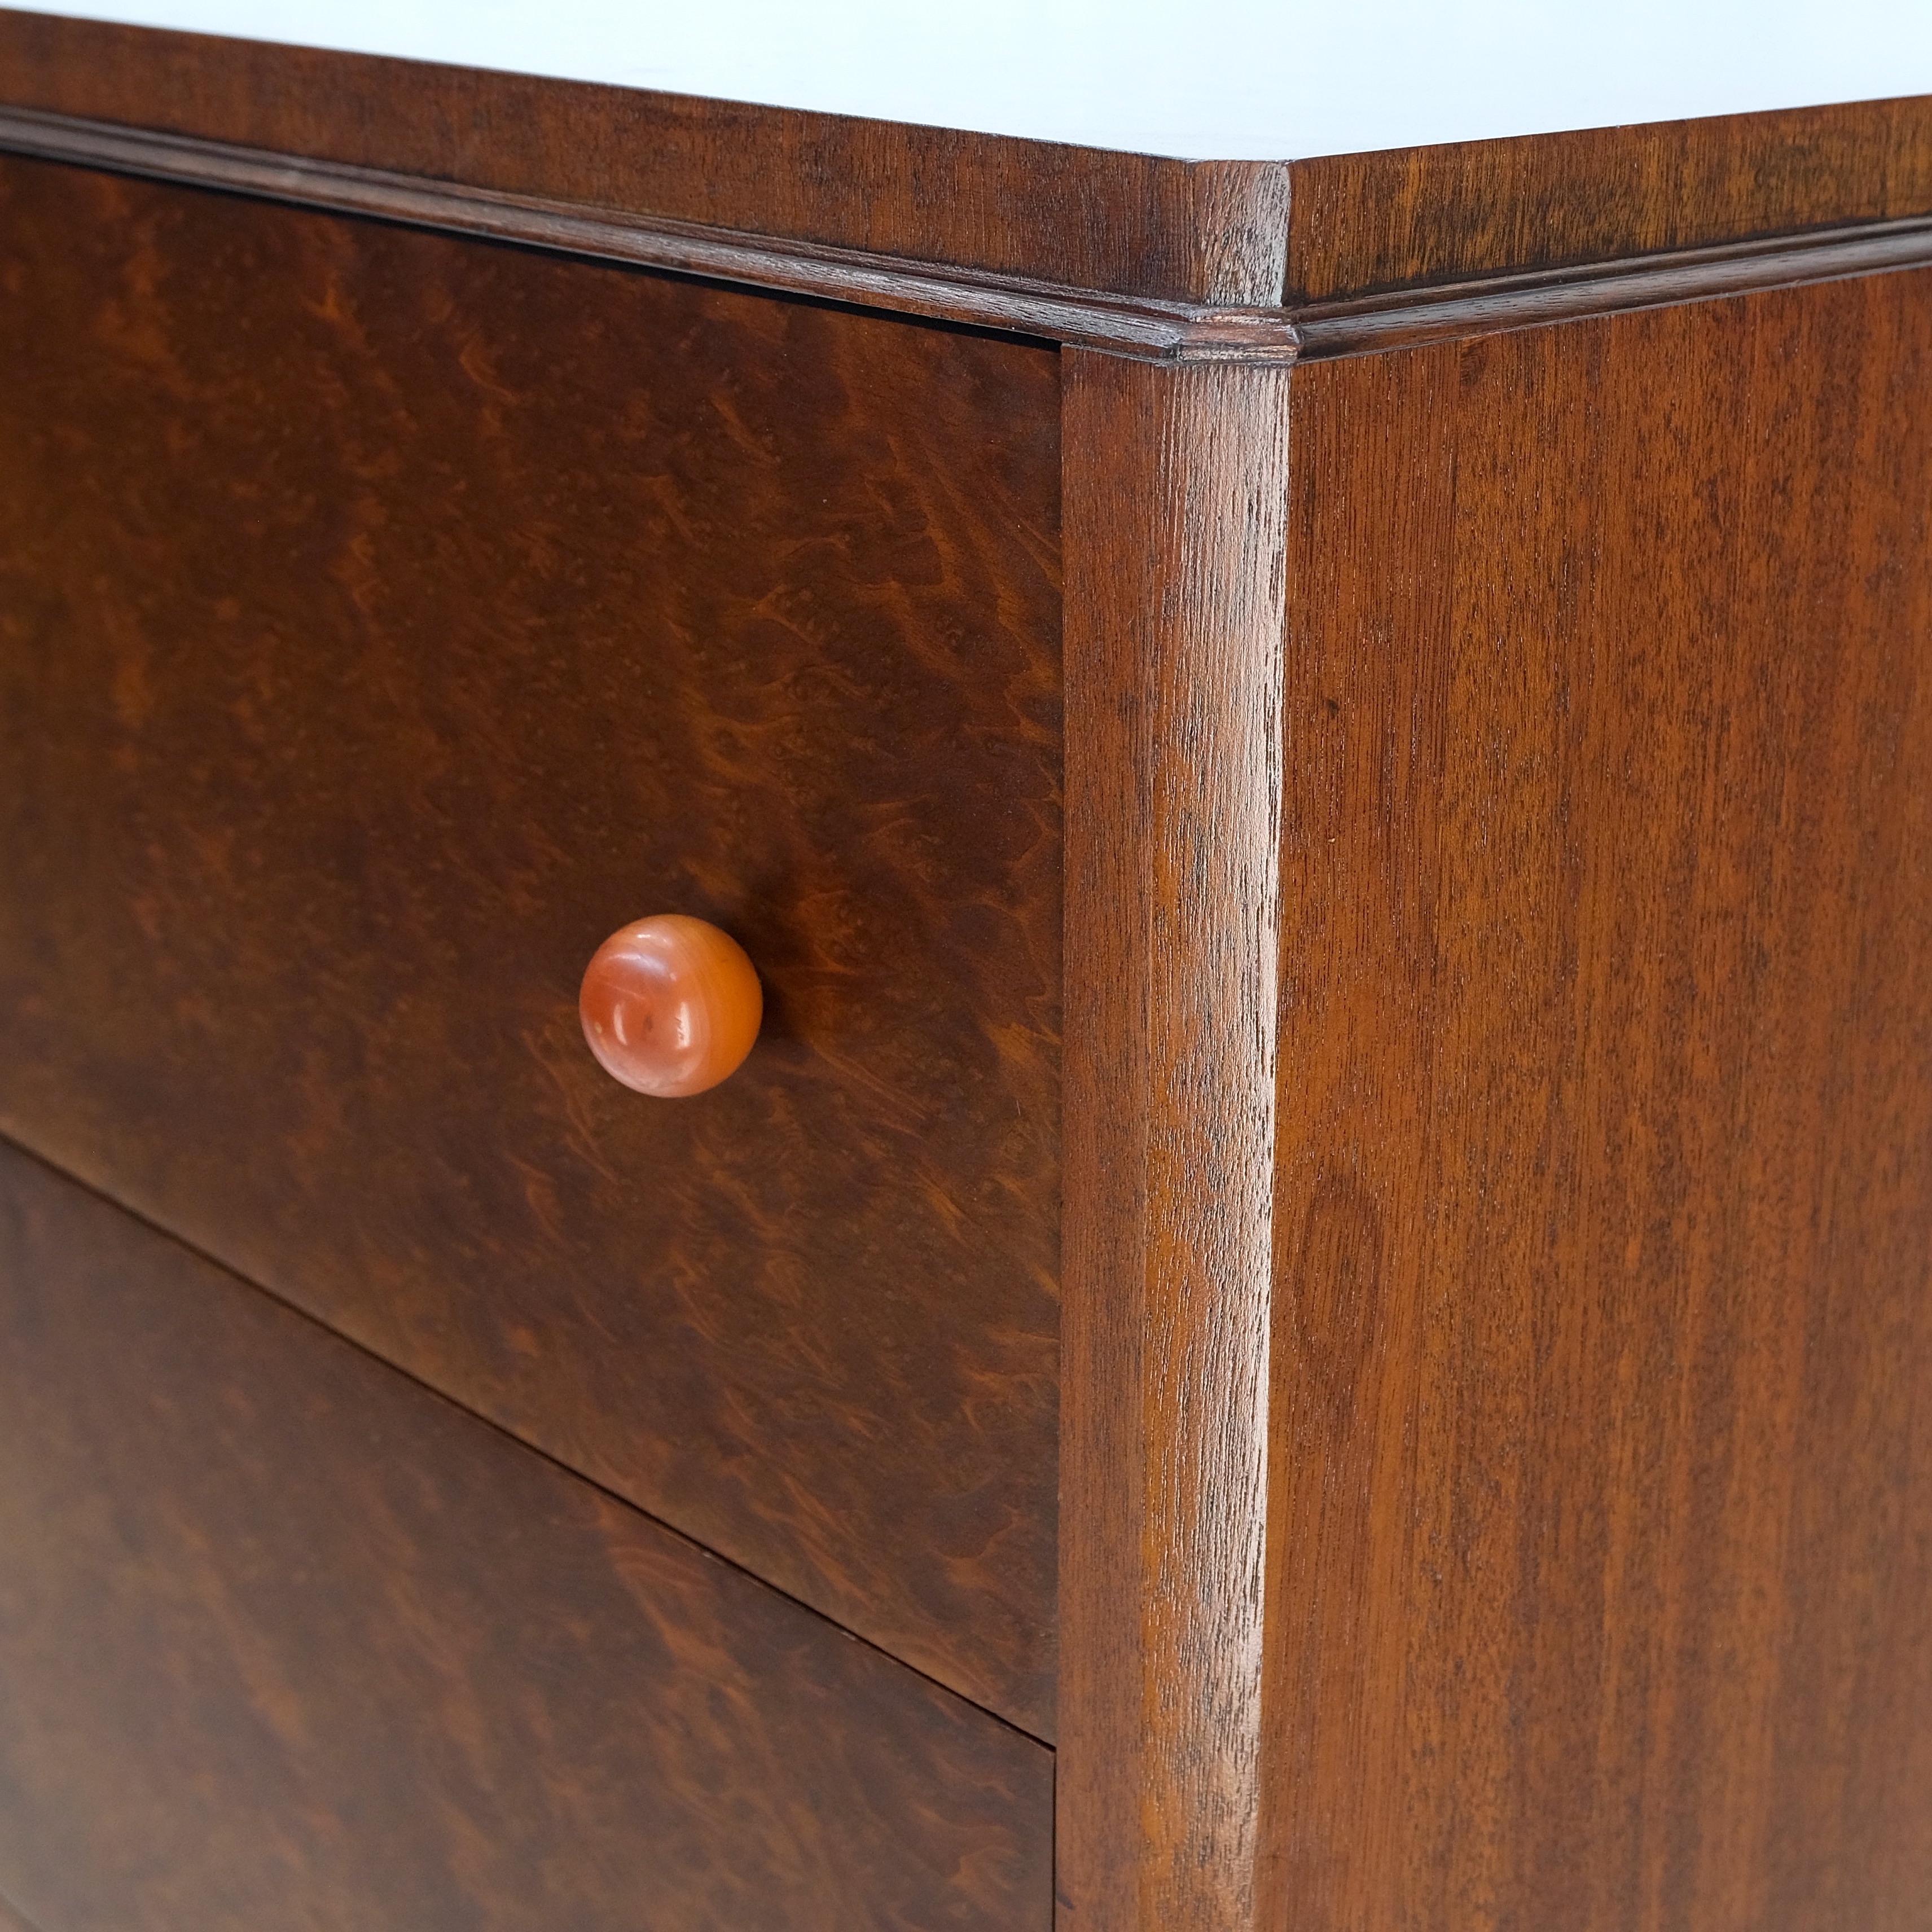 20th Century Carpathian Burl Bakelite Ball Pulls 4 Drawer Art Deco Chest Dresser Mint!